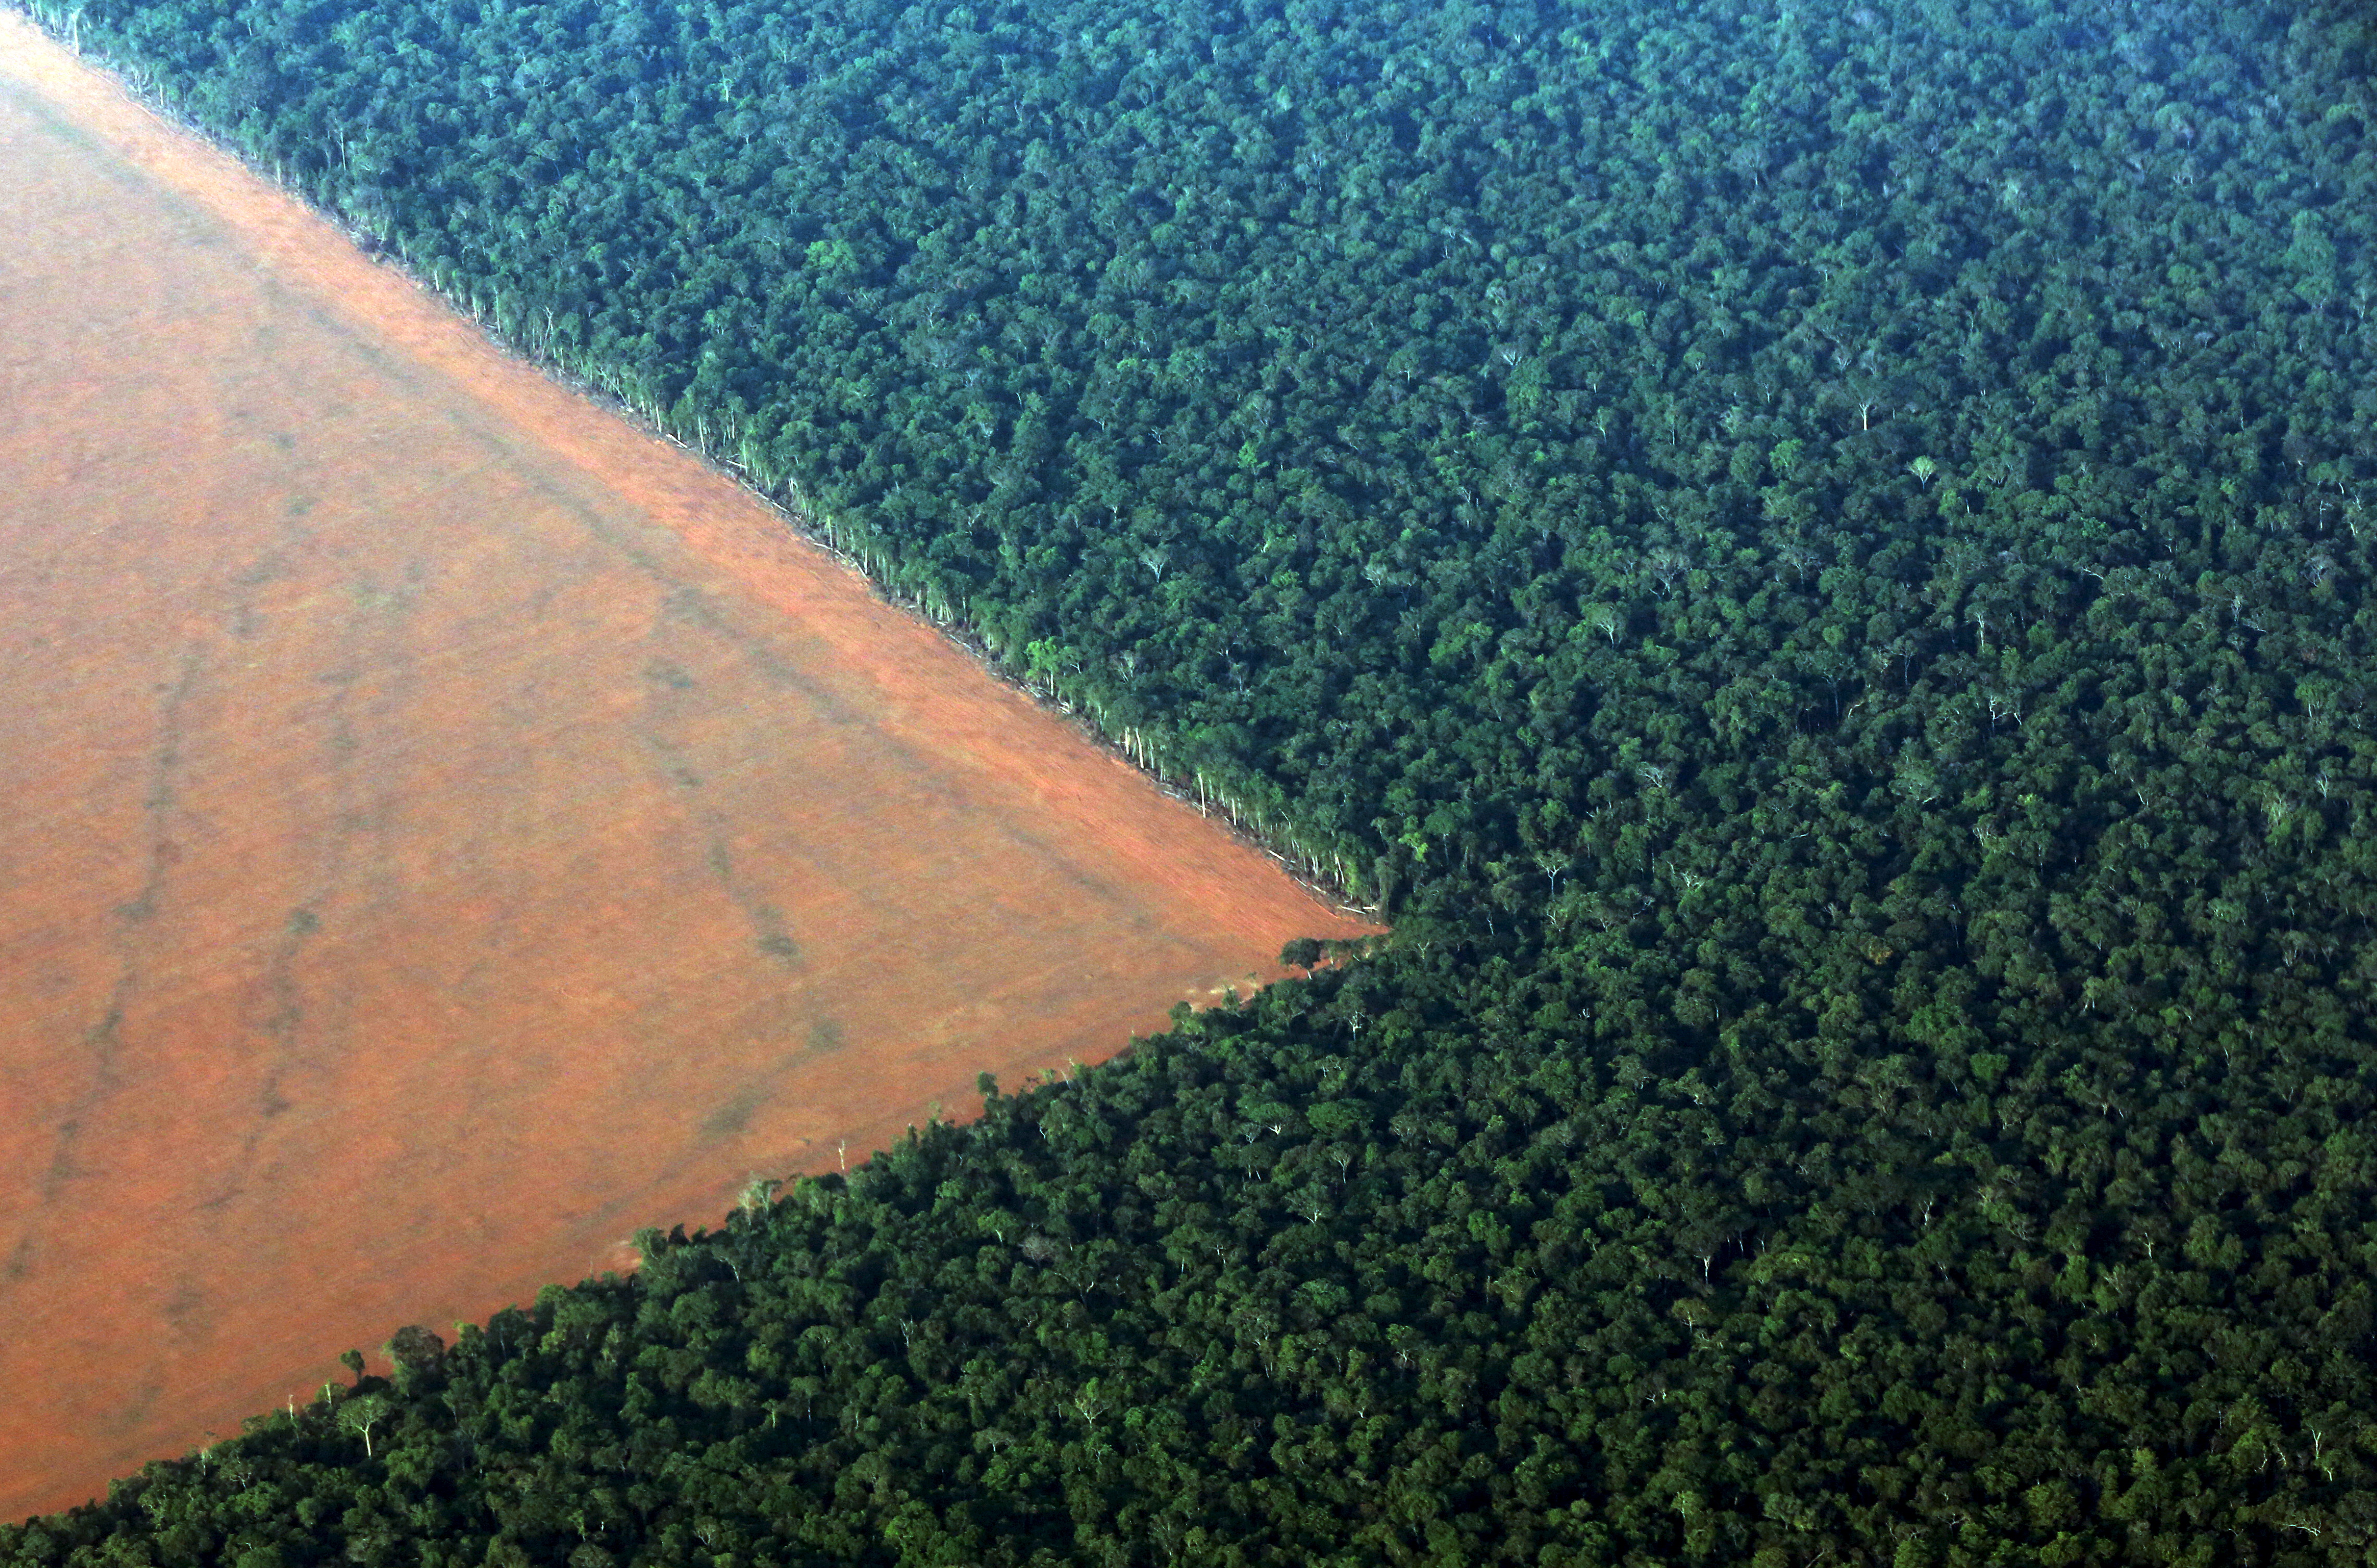 Organiser la traçabilité des importations en Europe pour mettre fin à la déforestation